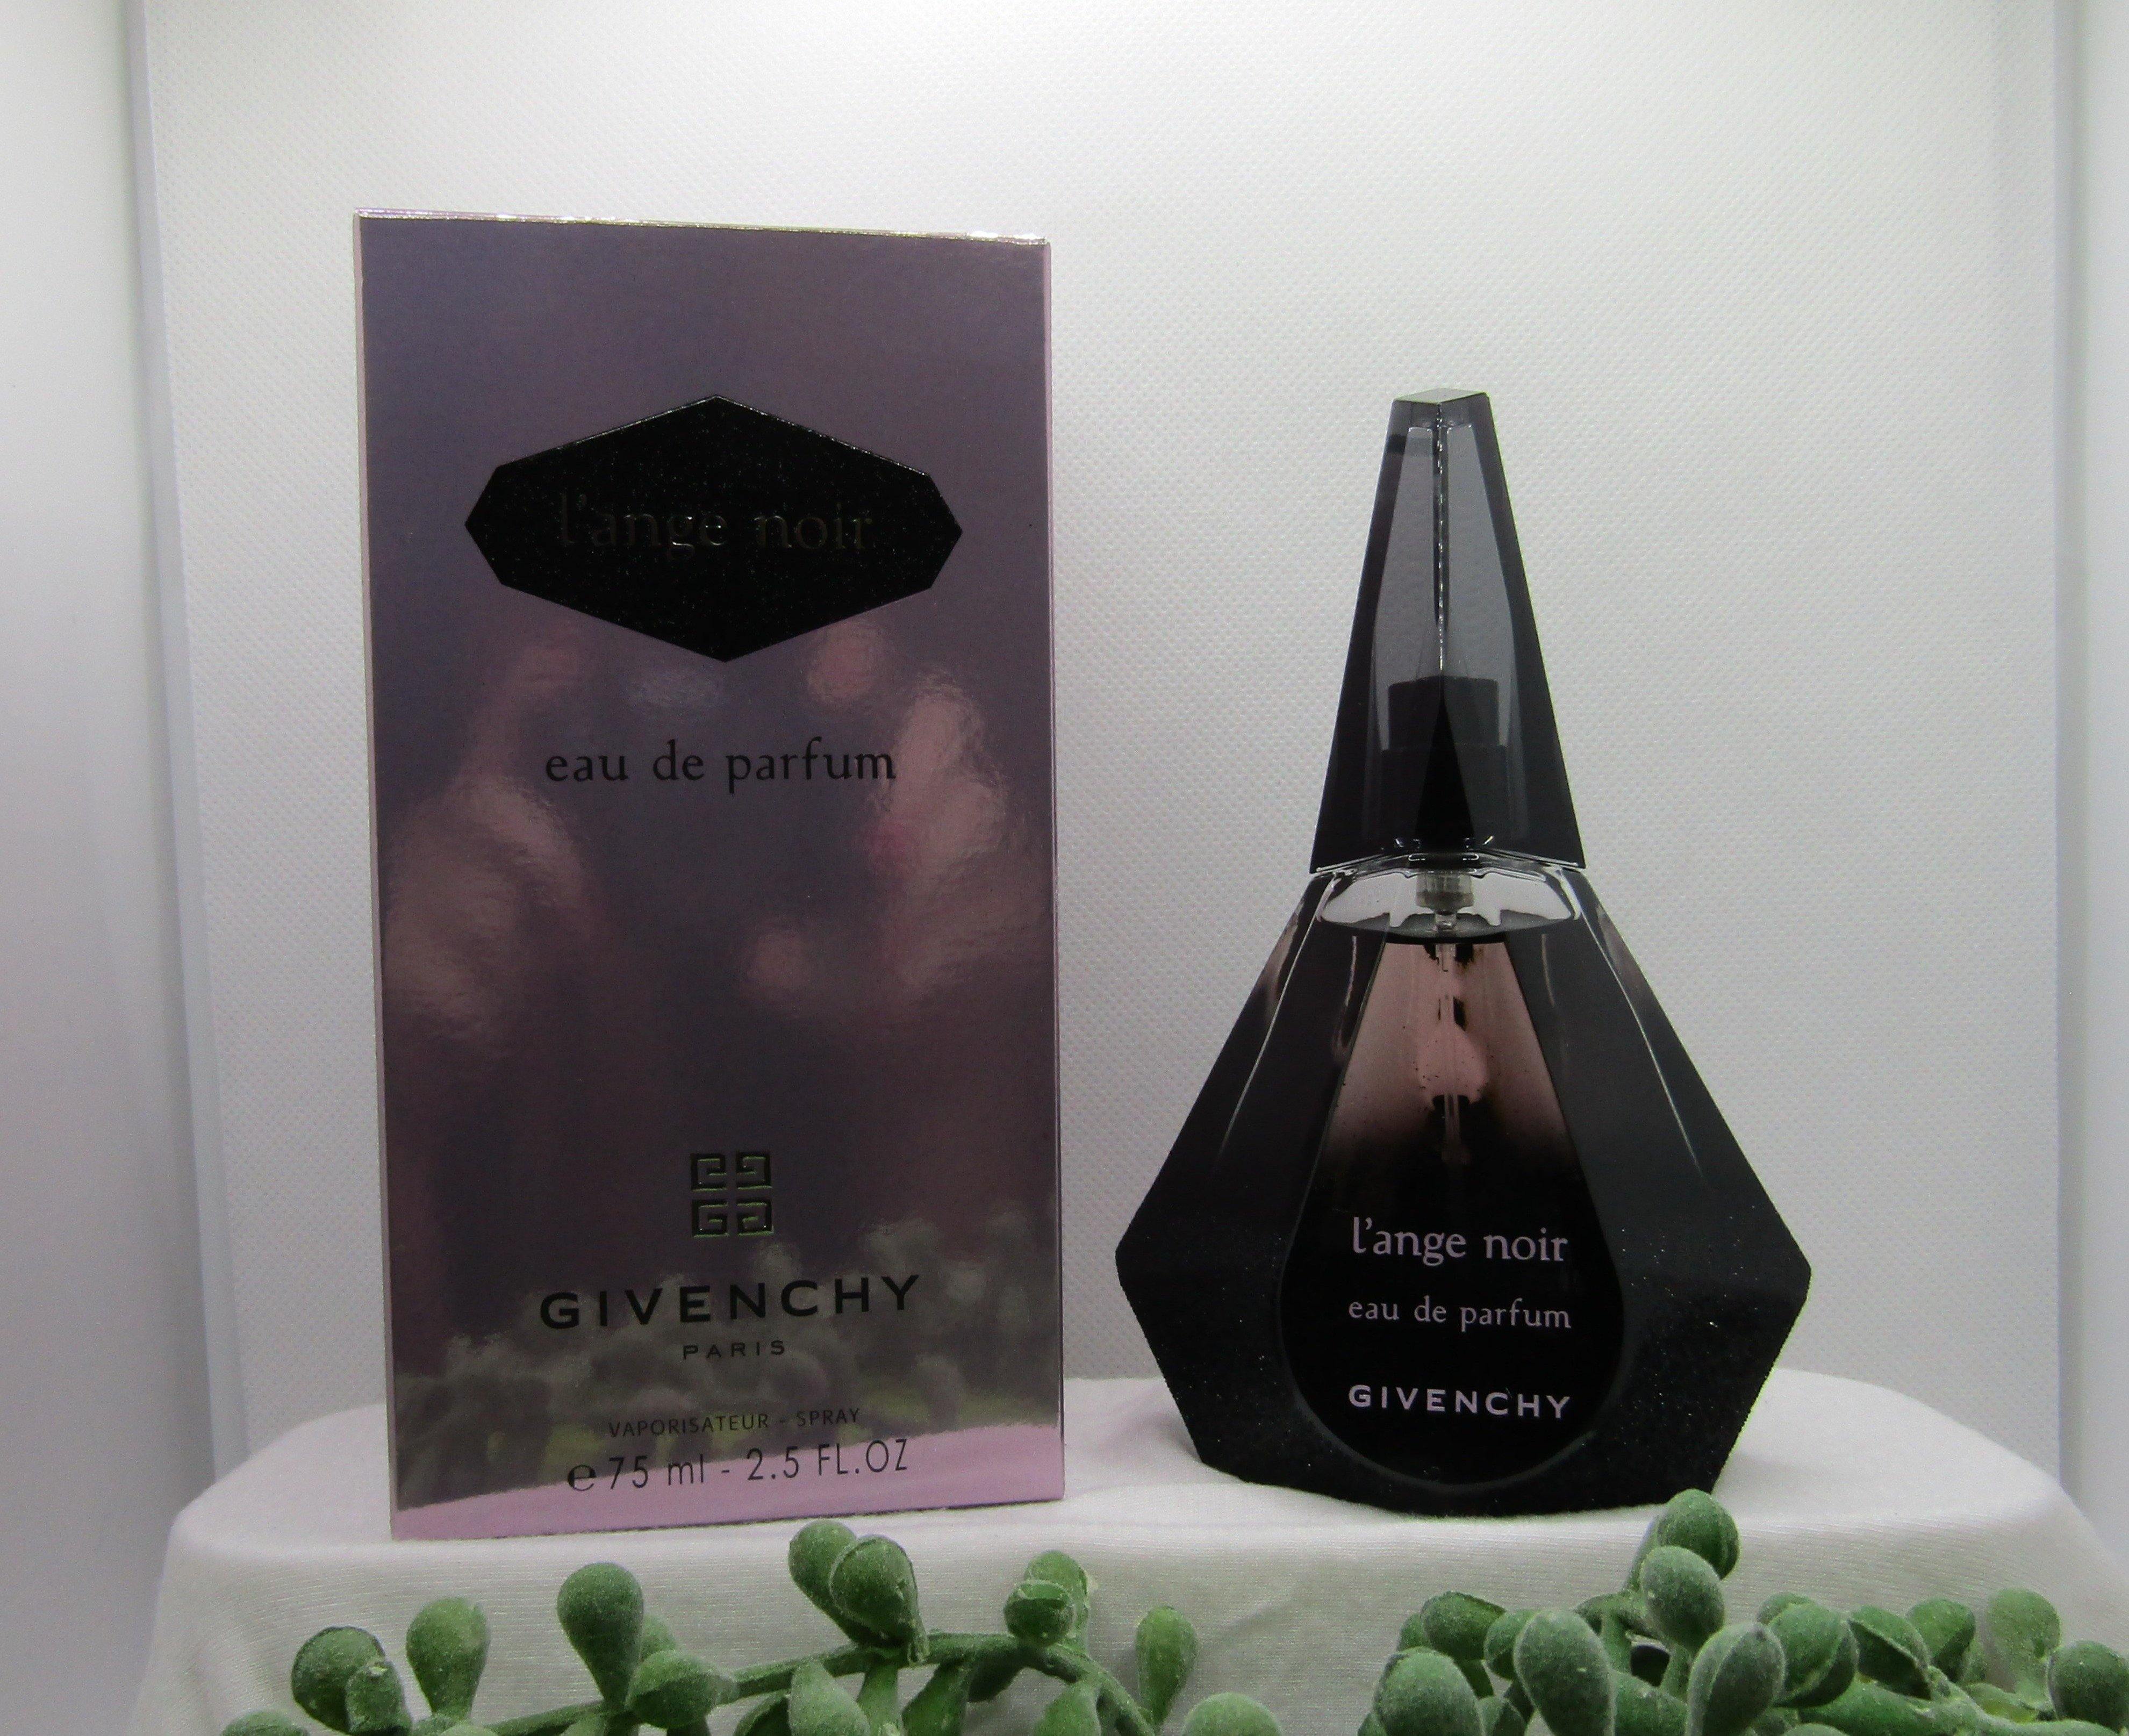 L'Ange Noir - by Givenchy, Eau De Parfum